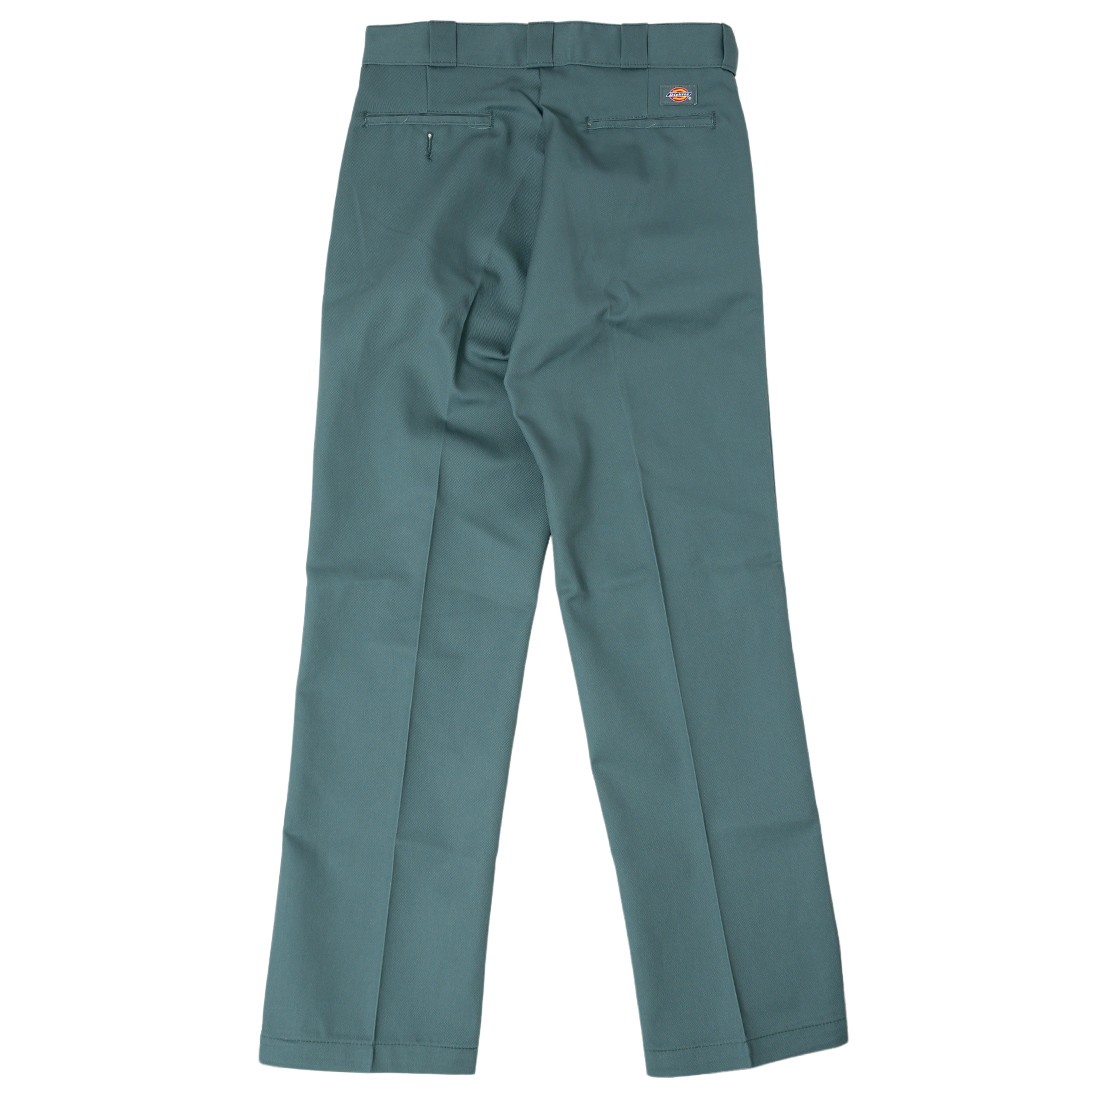 Dickies Men Original Fit 874 Work Pants green lincoln green